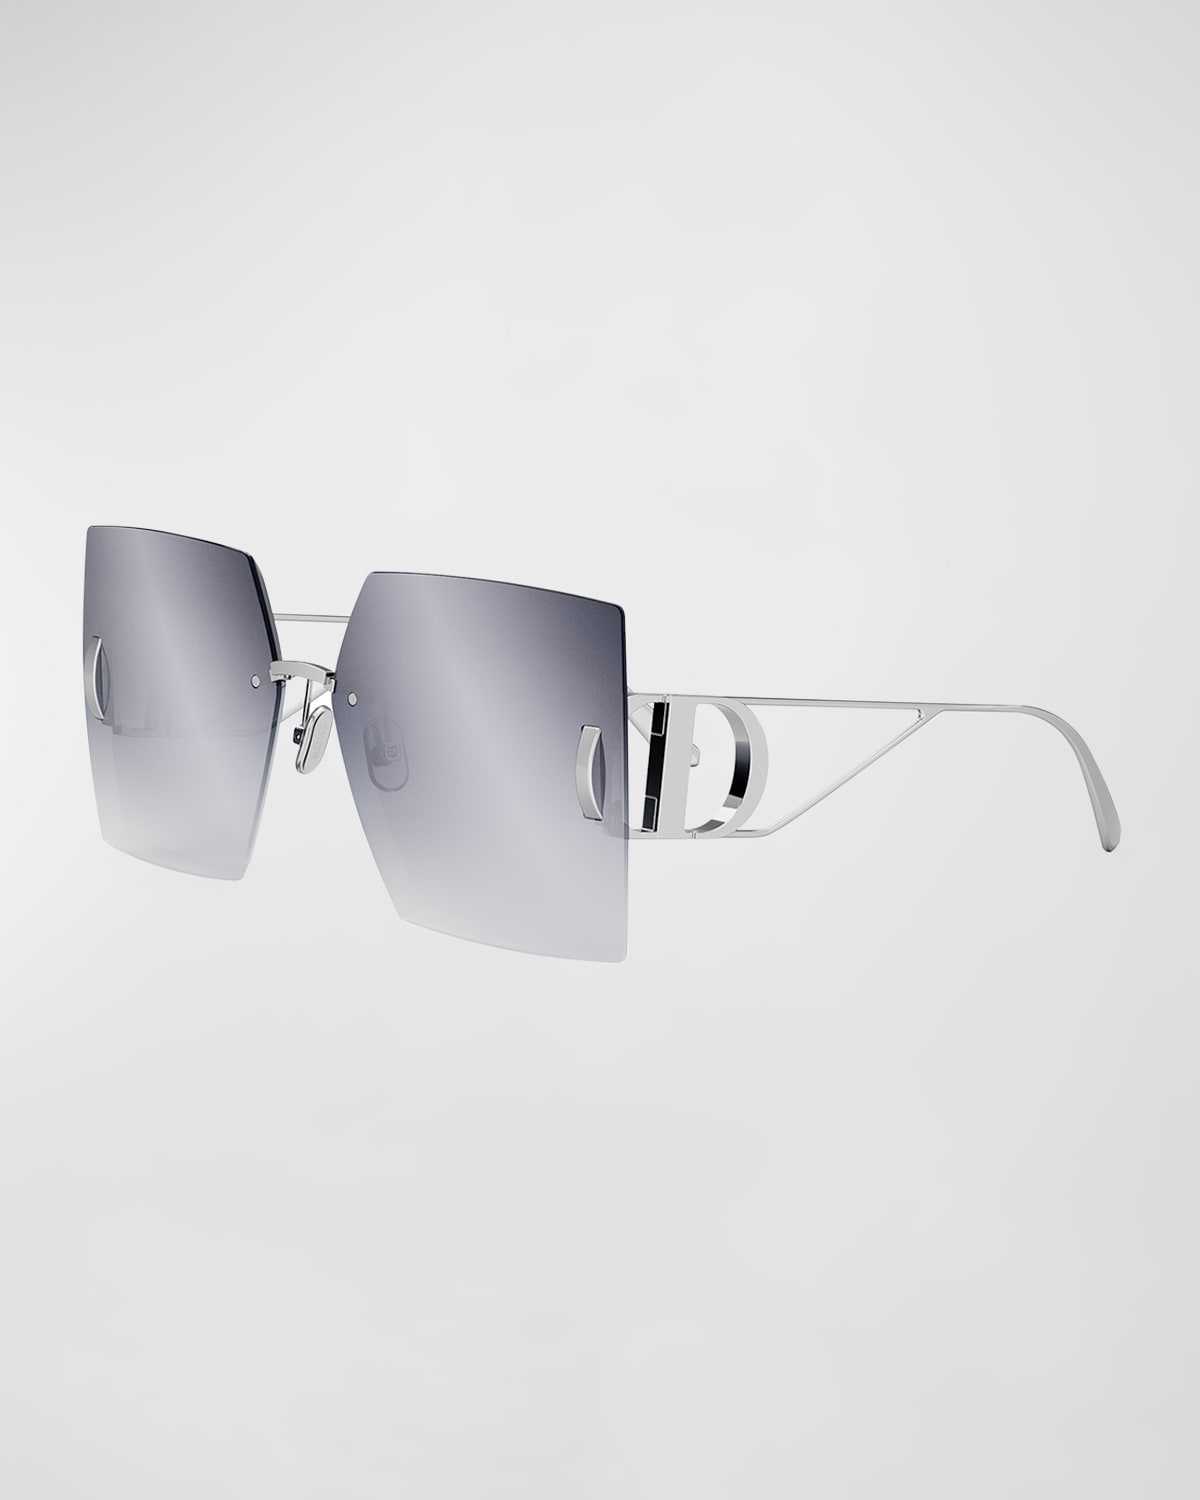 Dior 30montaigne S7u Sunglasses In Silver/gray Mirrored Gradient